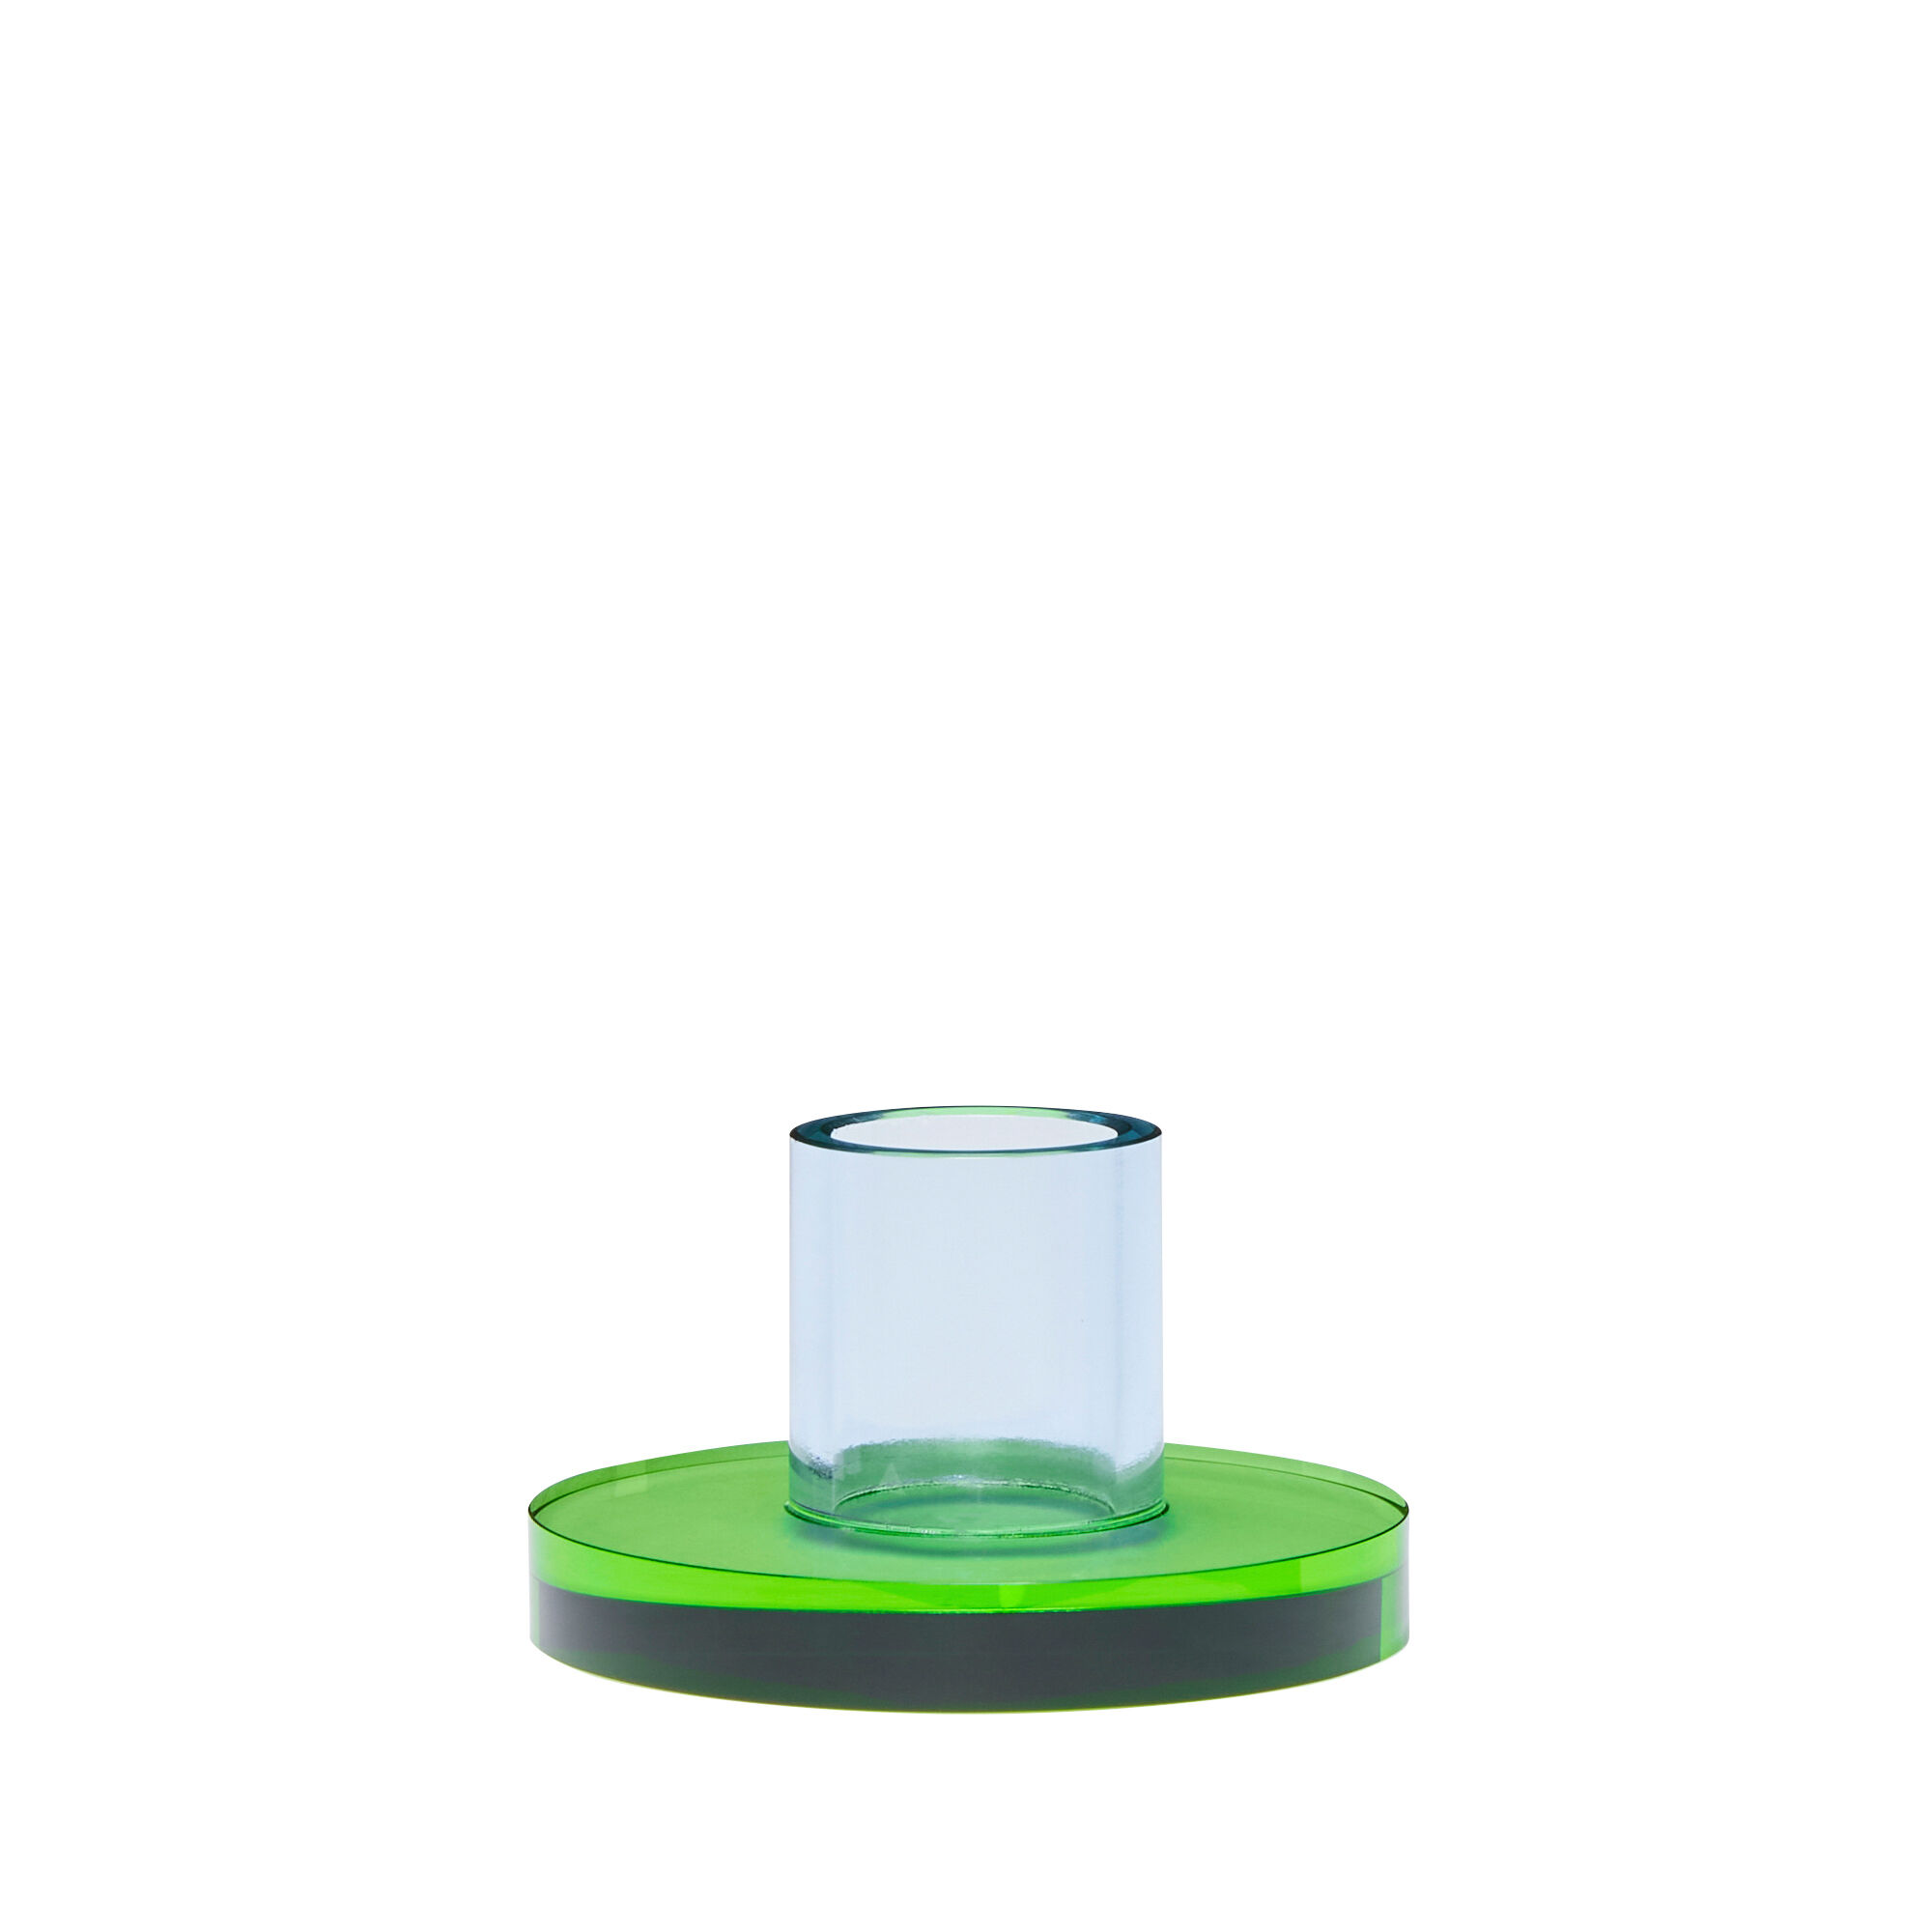 Hubsch Astra Candleholder Small in Blue, Green